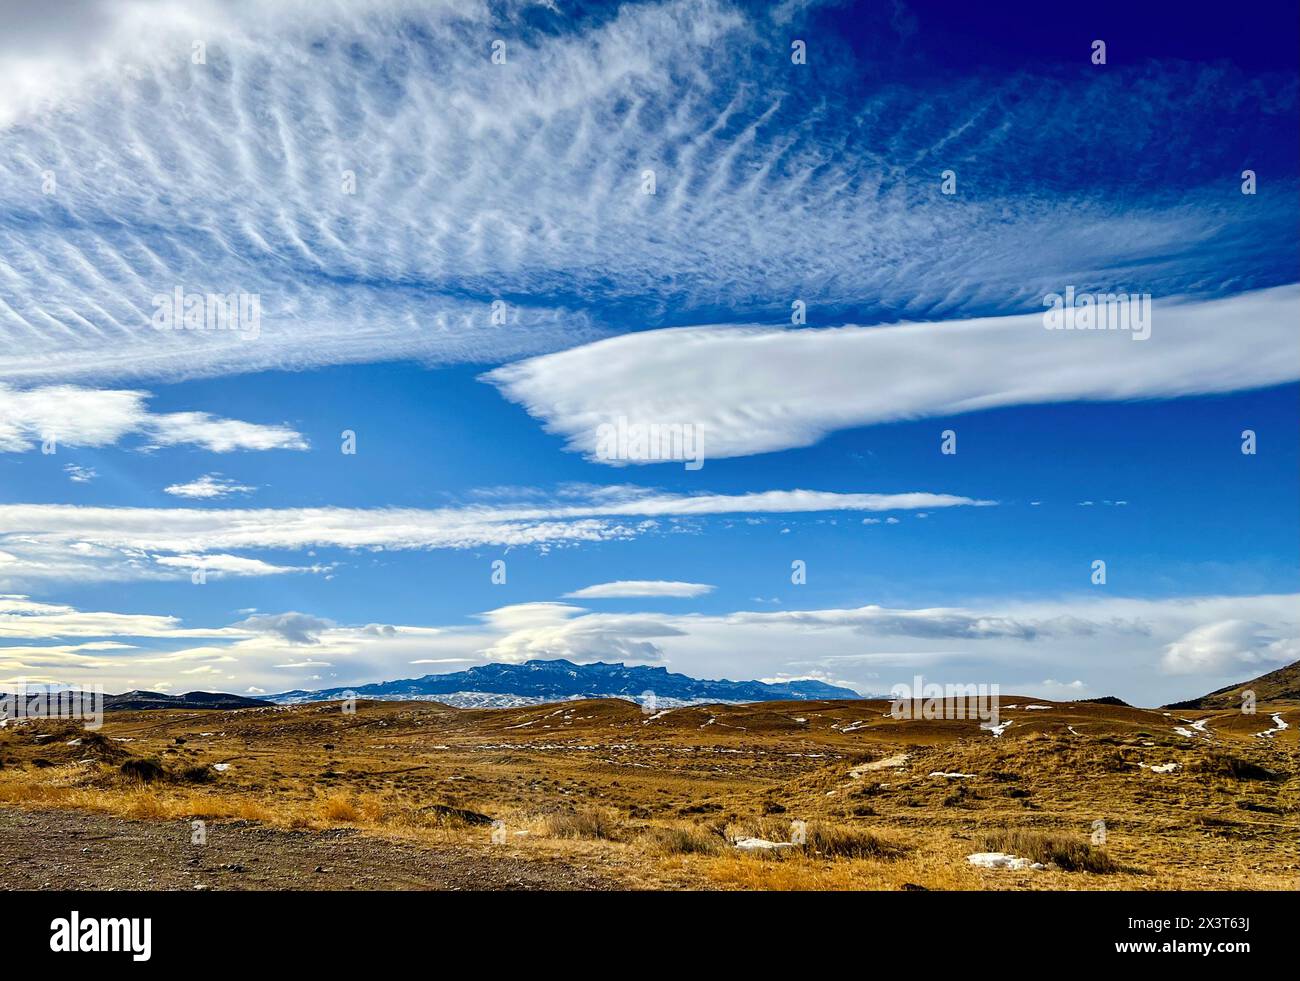 Les nuages d'Altocumulus et d'autres formations nuageuses dans un ciel bleu profond planent au-dessus des montagnes Absaroka dans le parc national de Yellowstone, vu de Cody, Wyoming. Banque D'Images